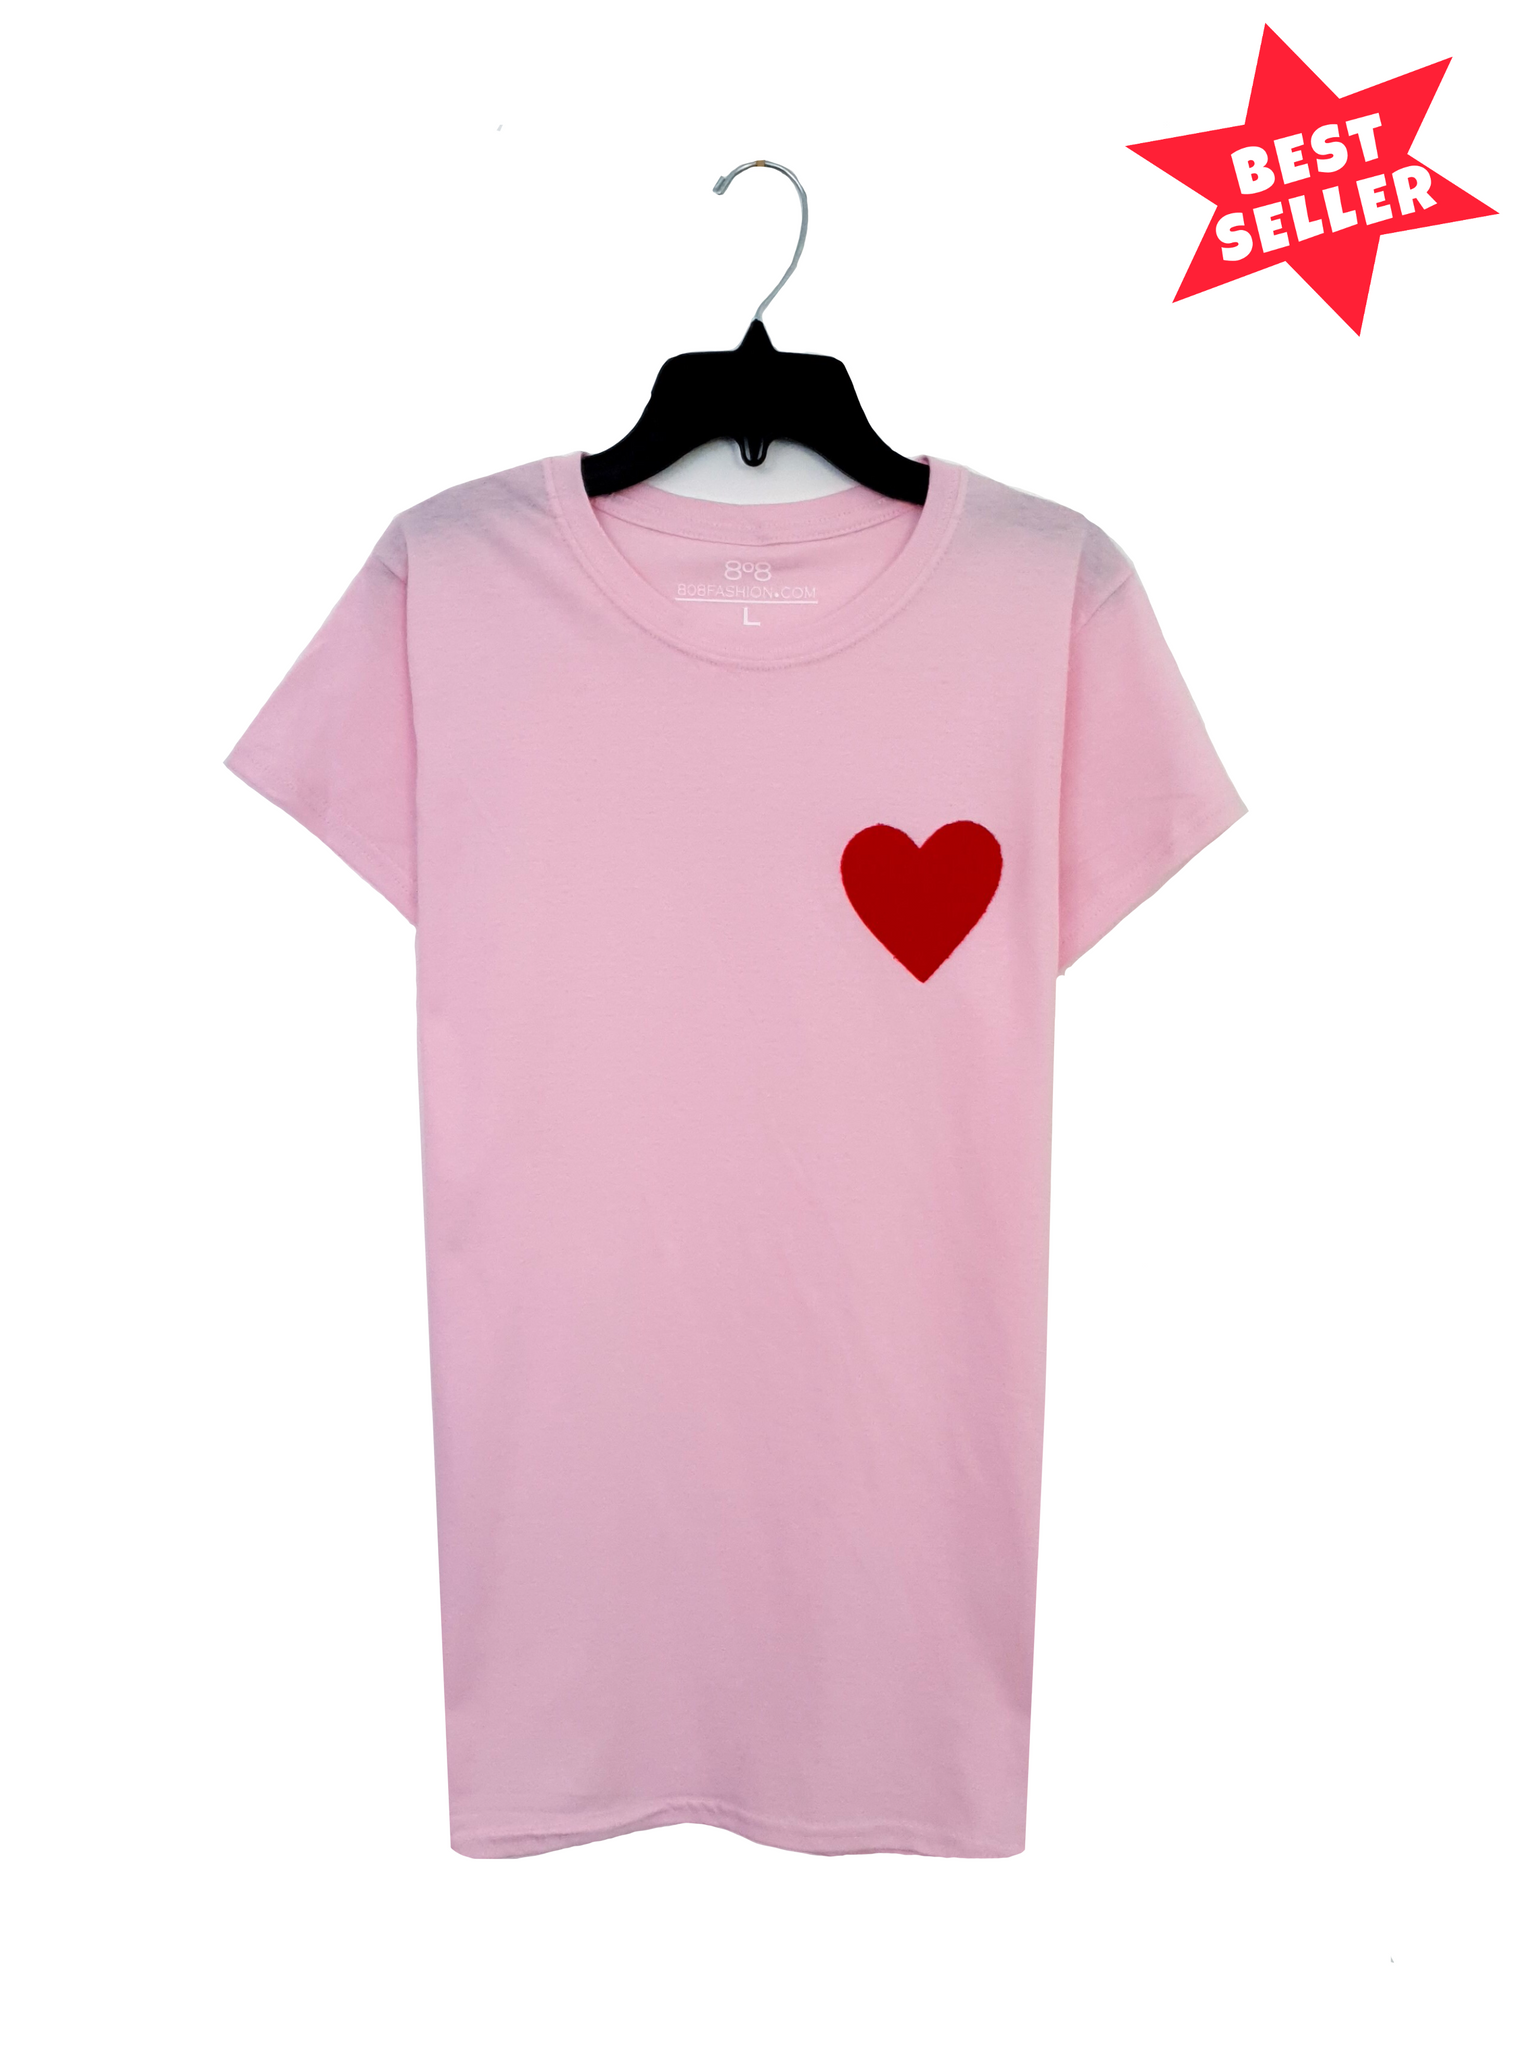 Love Heart T shirt - Light Pink - Women